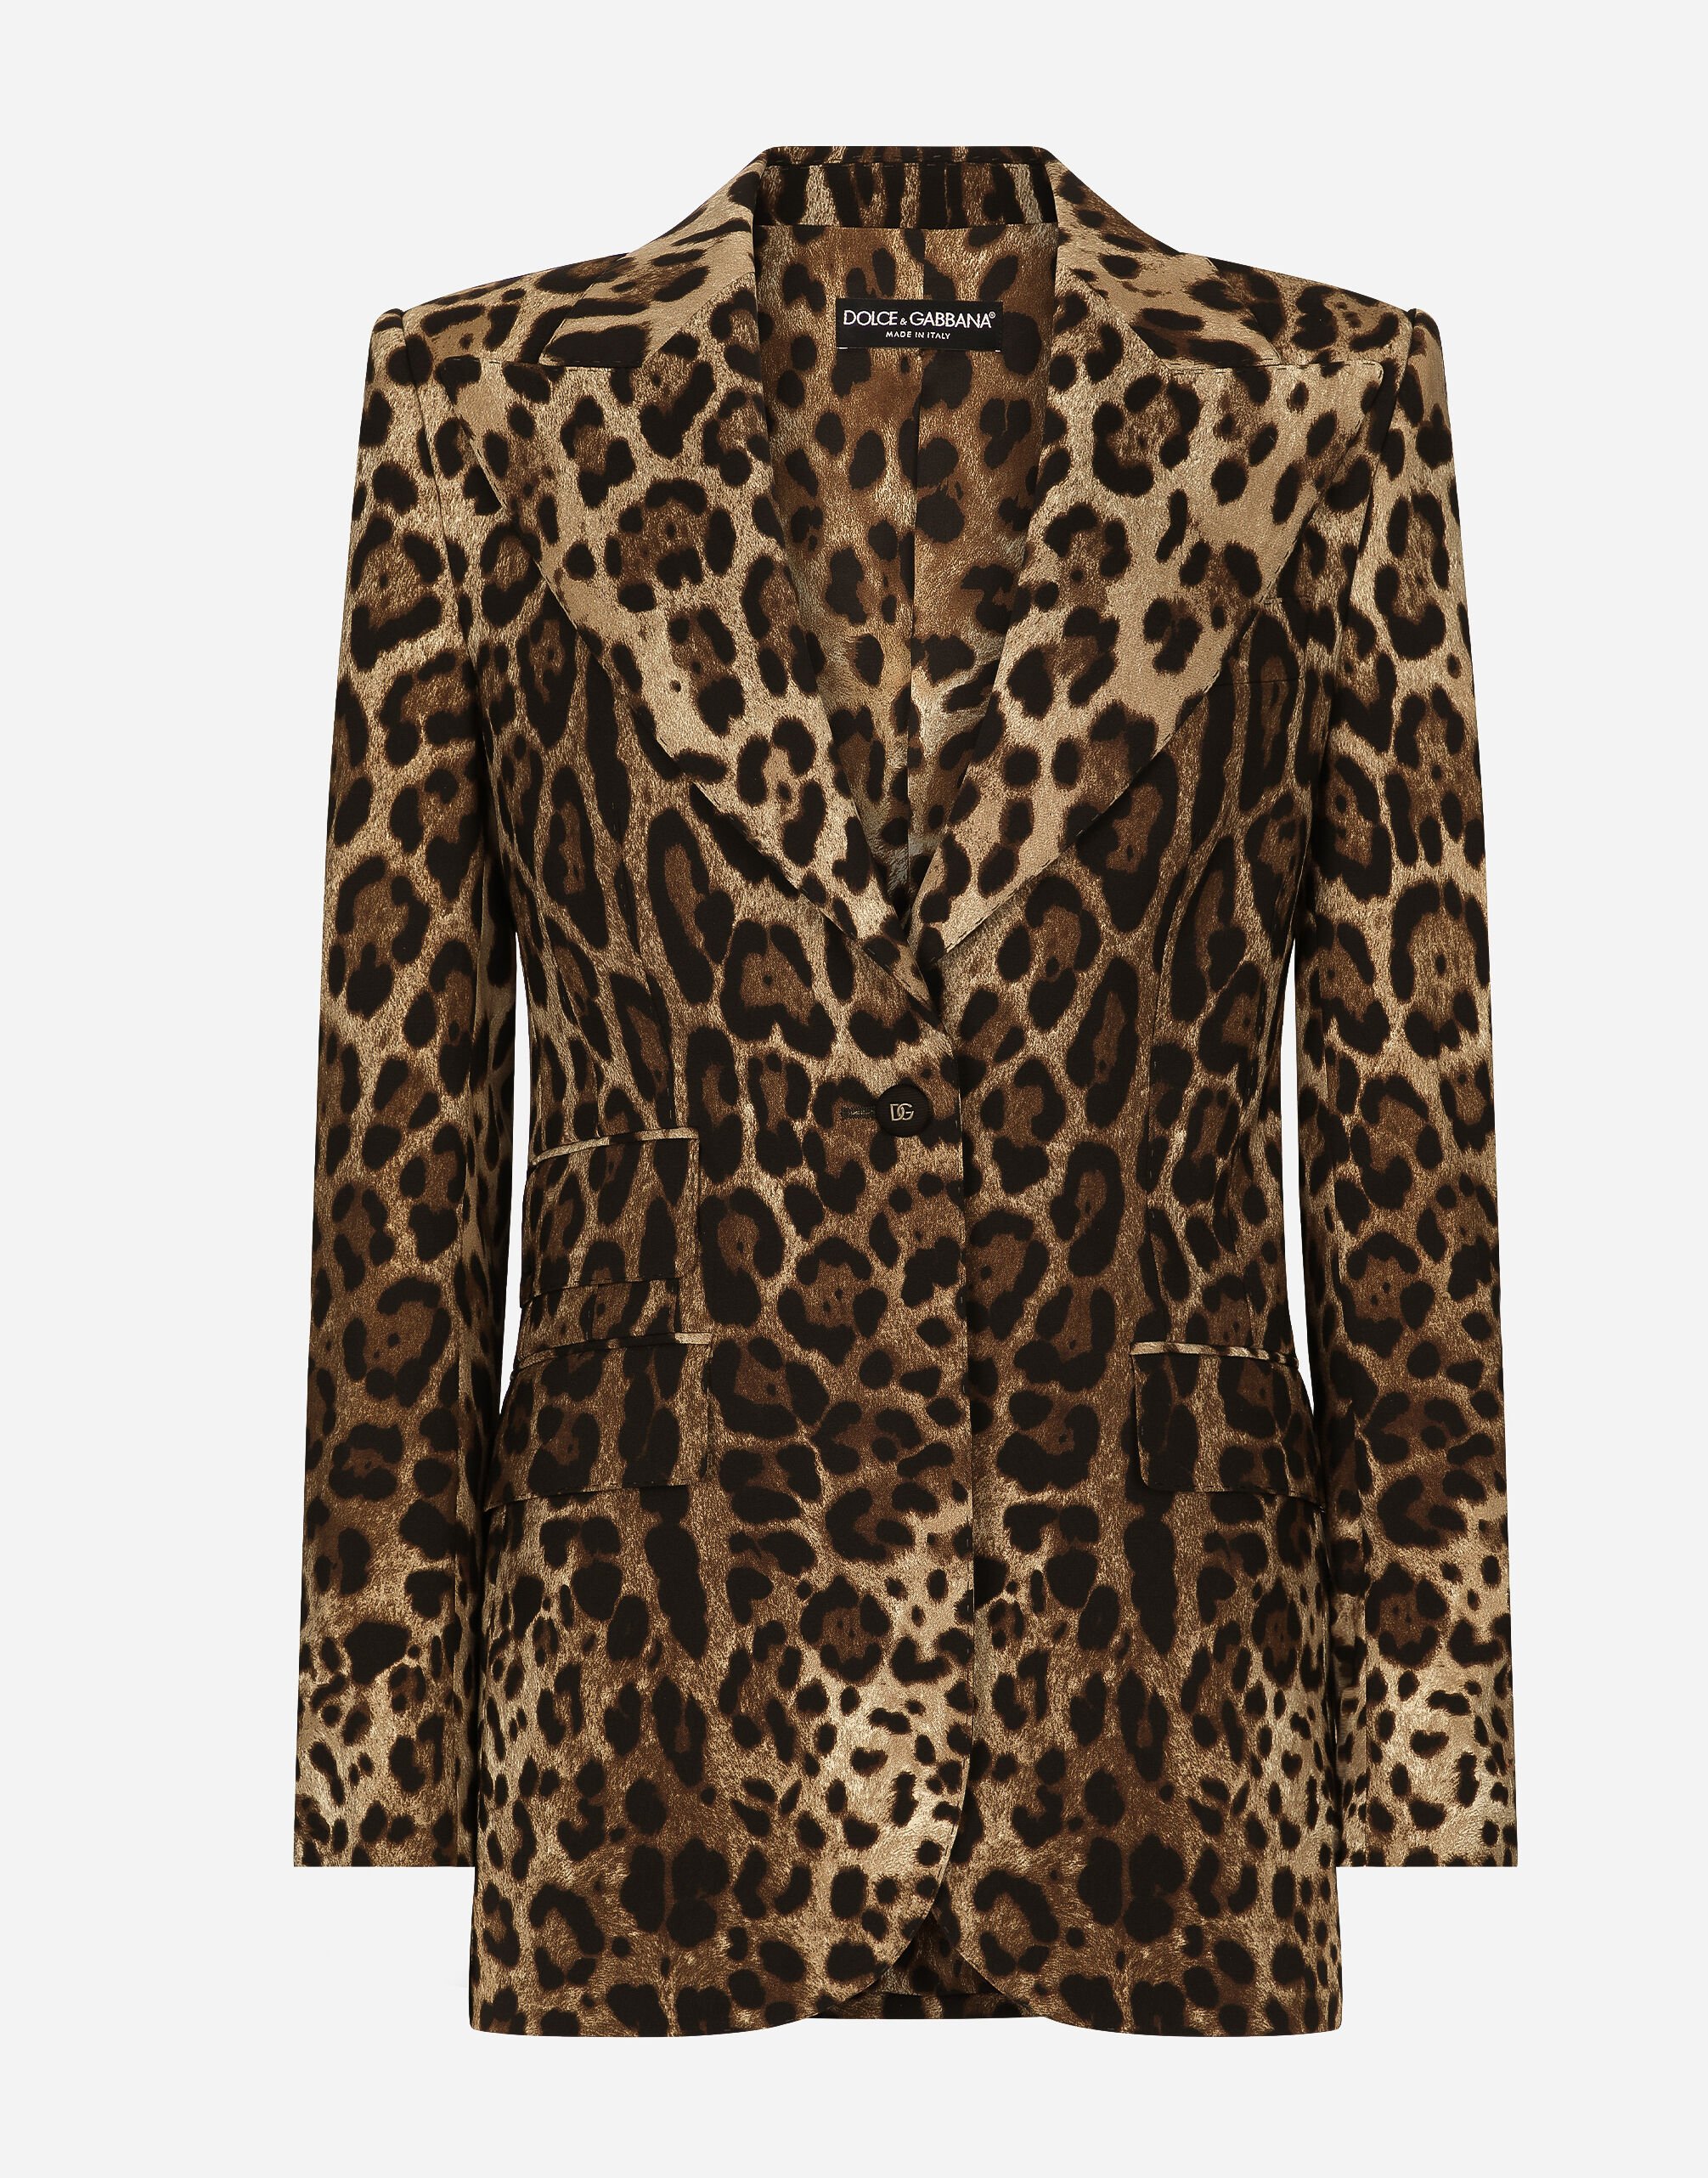 Dolce&Gabbana Пиджак Turlington из шерсти с леопардовым принтом леопардовым принтом F9R11THSMW8